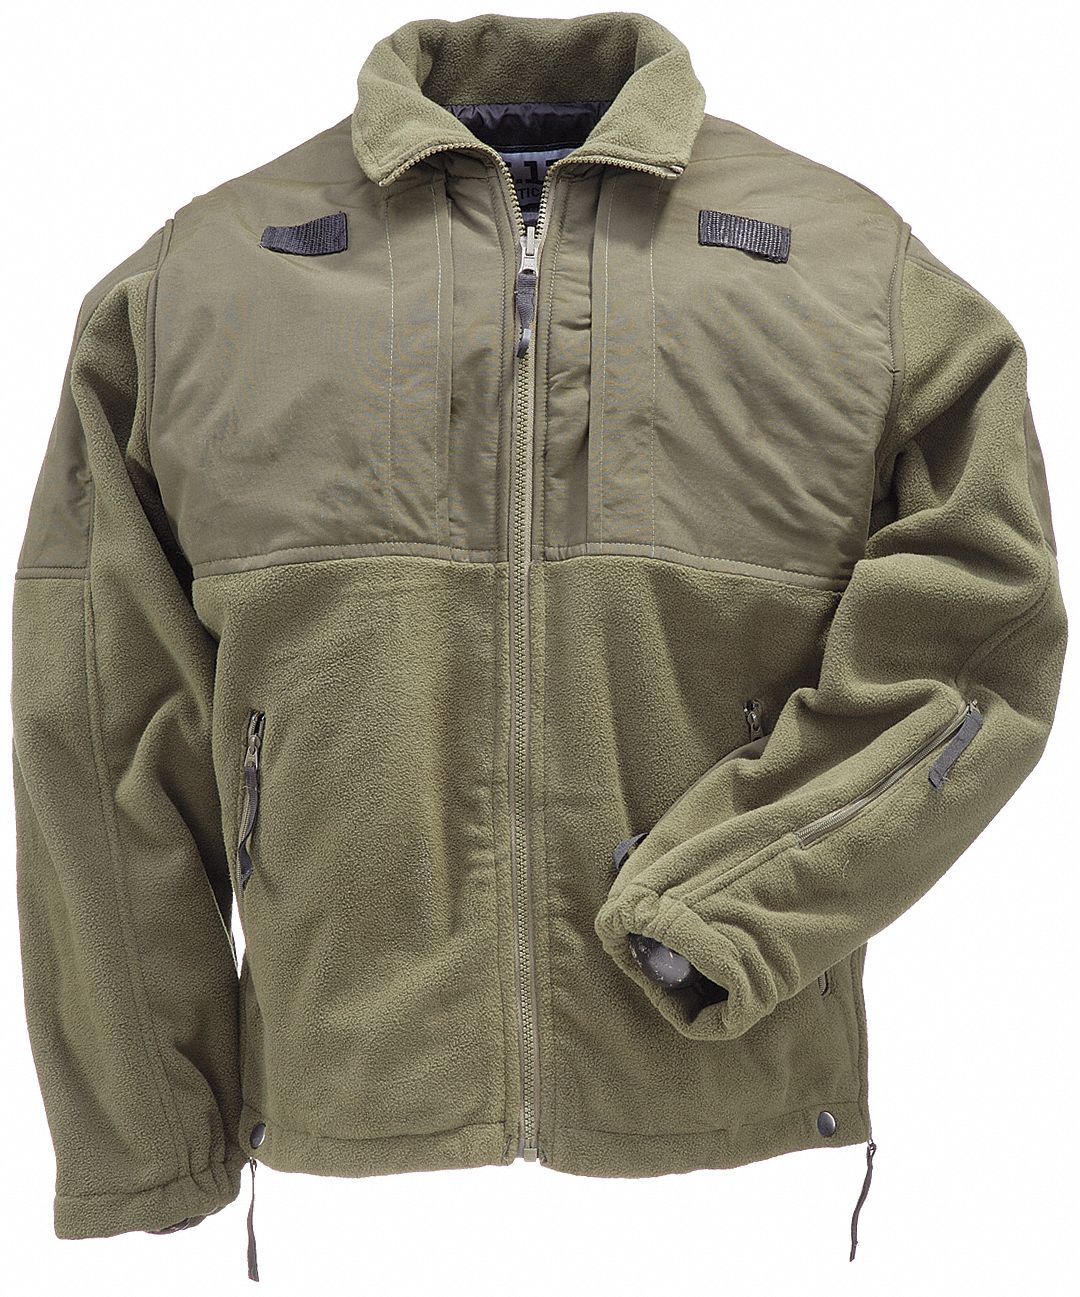 Wind-Resistant YKK Zippers Style 48038 5.11 Tactical Men's Fleece Jacket 